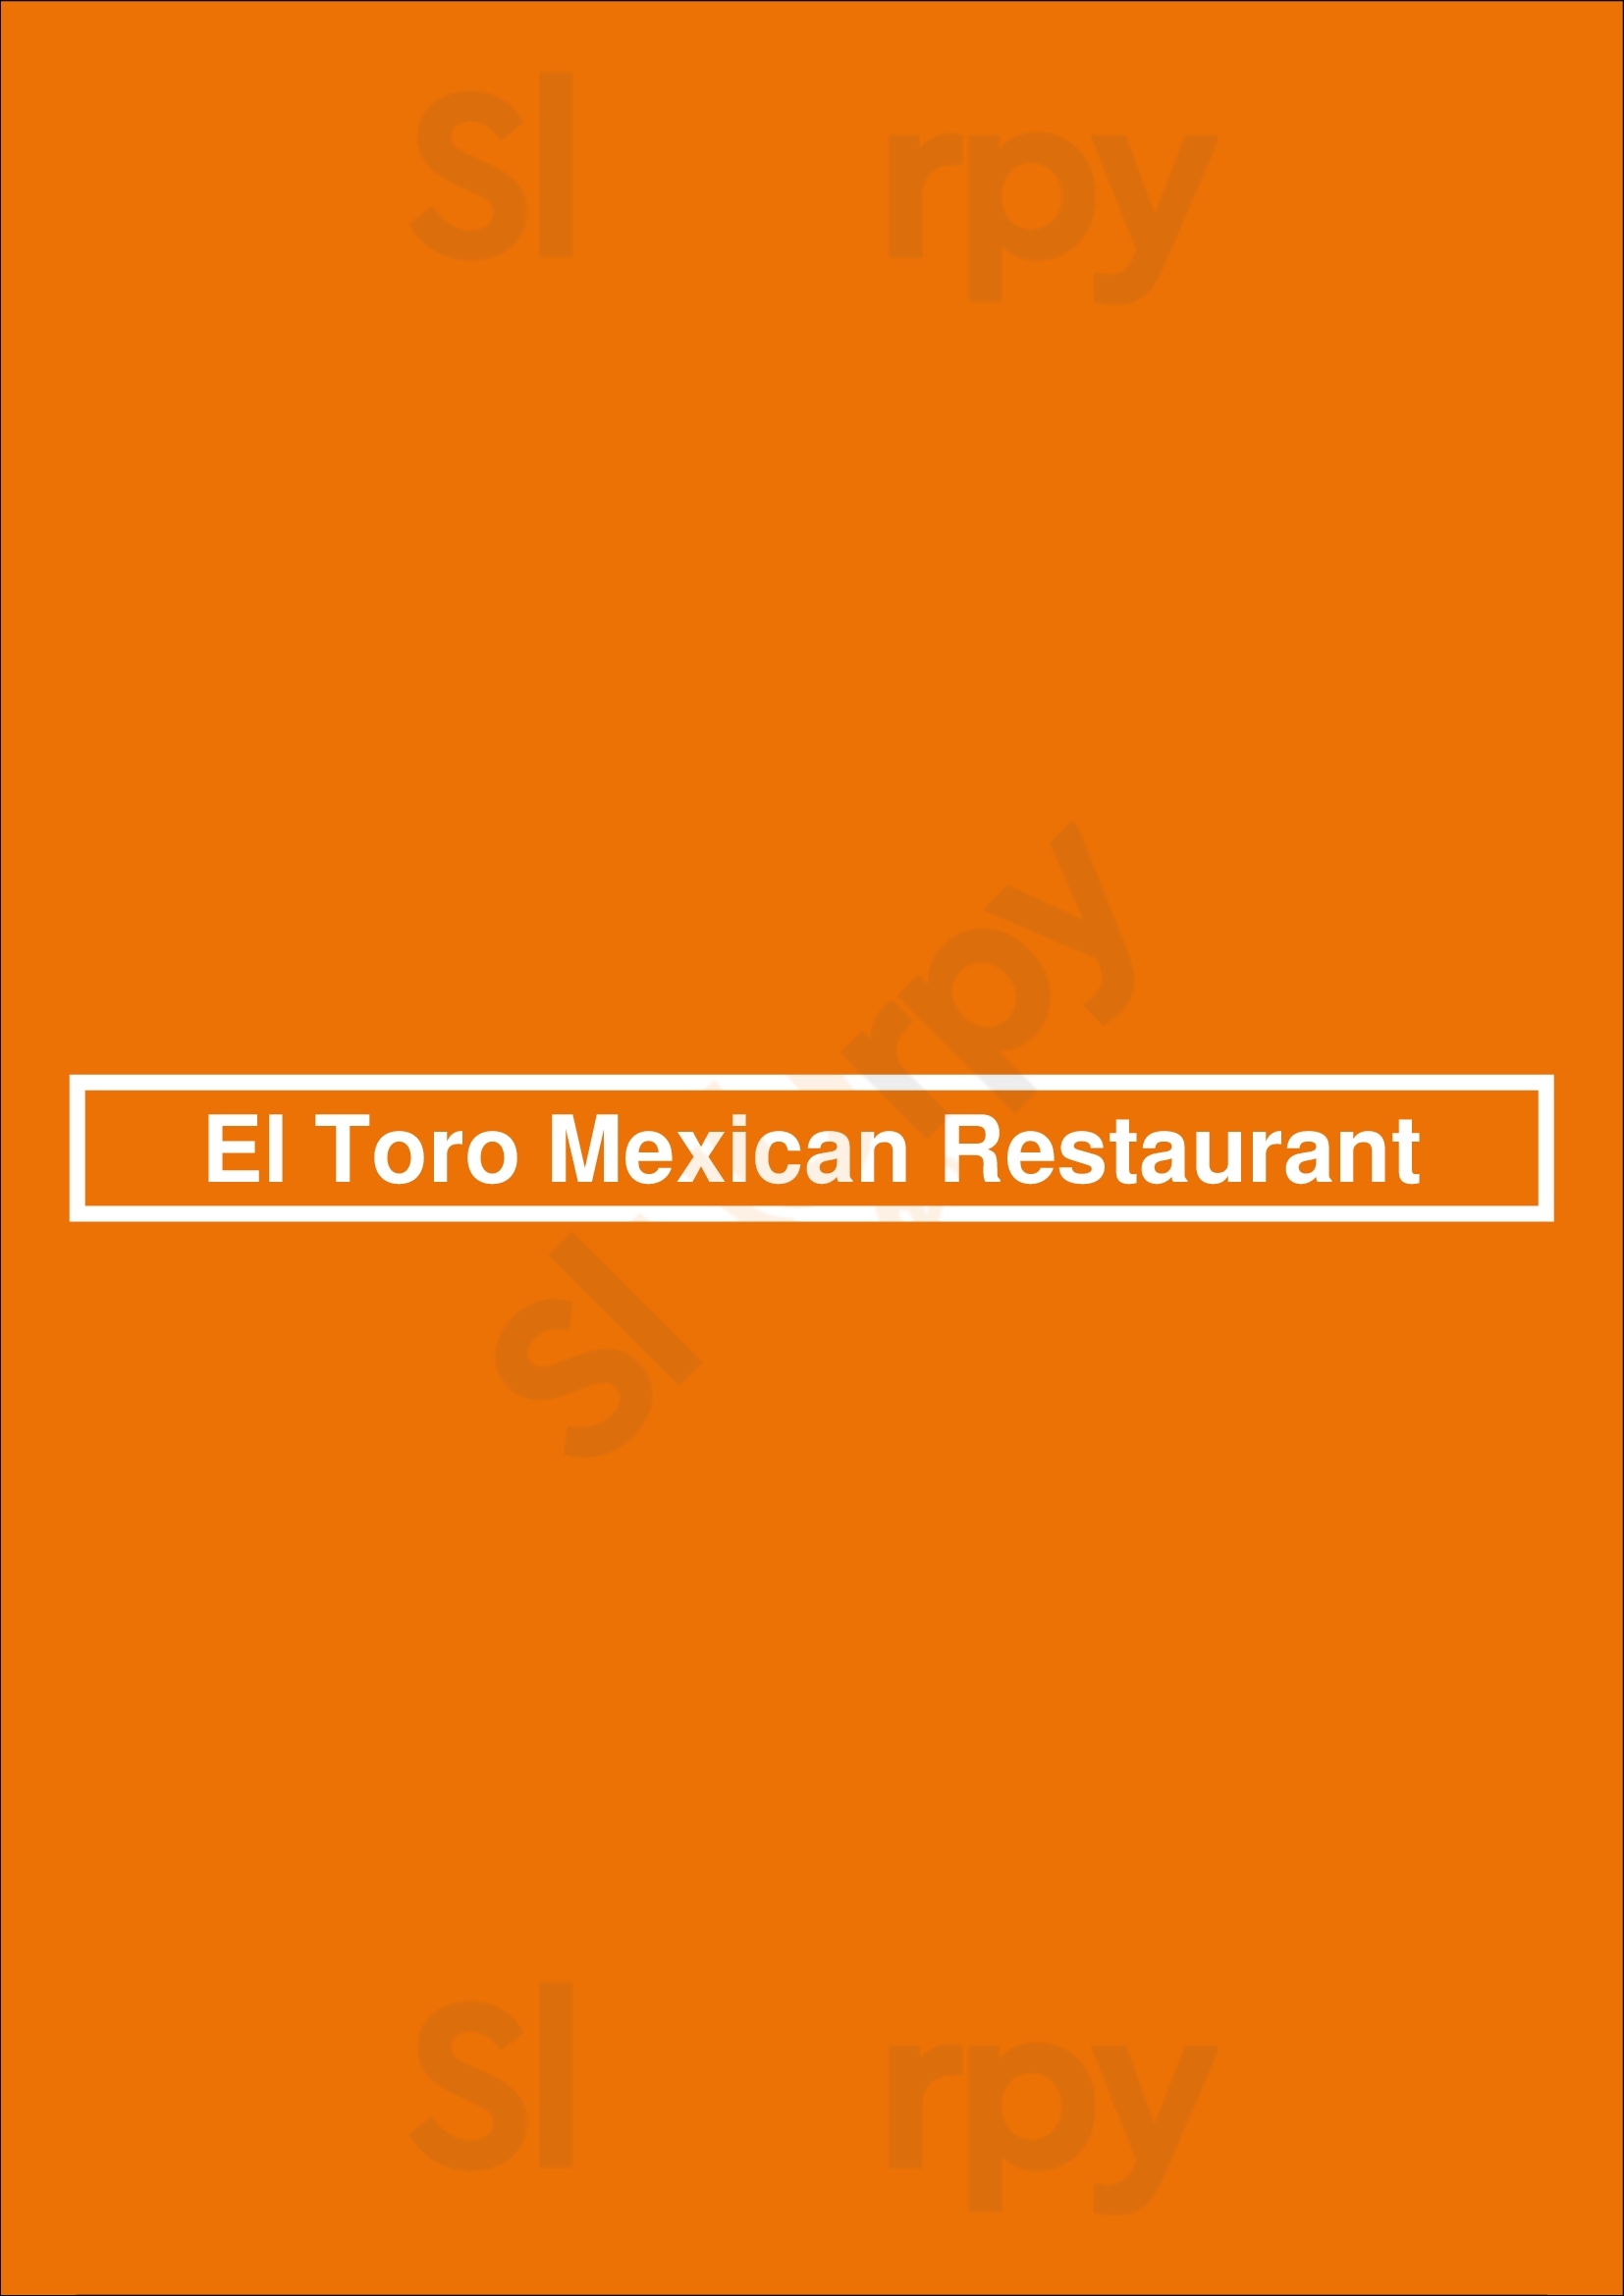 El Toro Mexican Restaurant Lexington Menu - 1